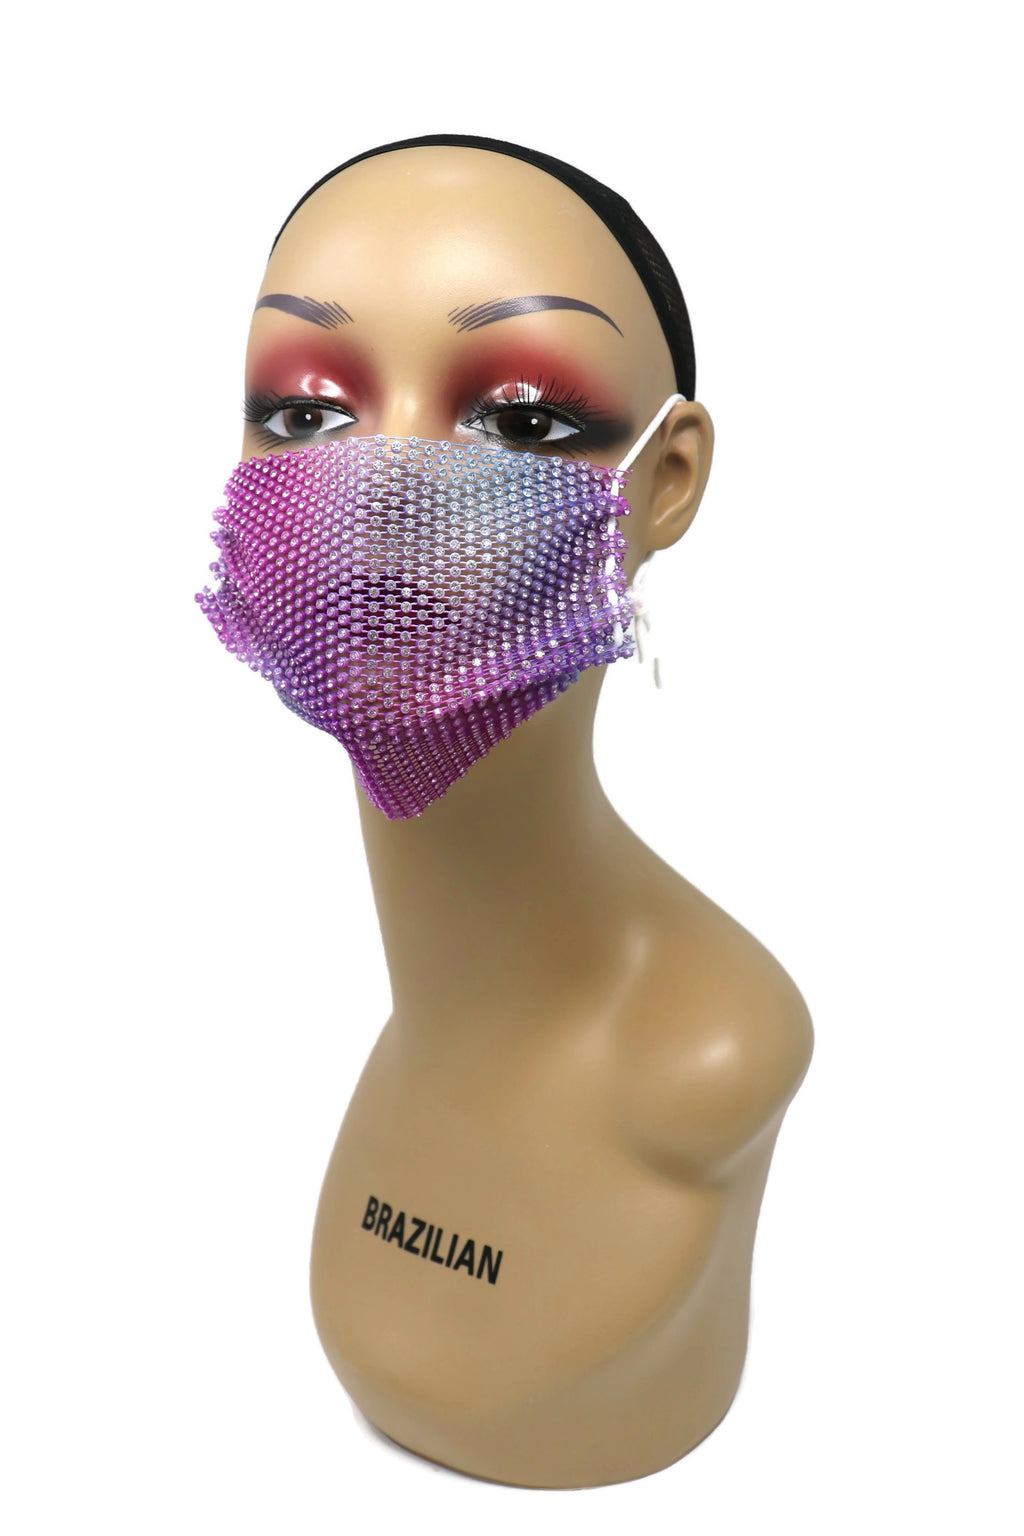 Grid Rhinestone Crystal Mask (Purple Multi)